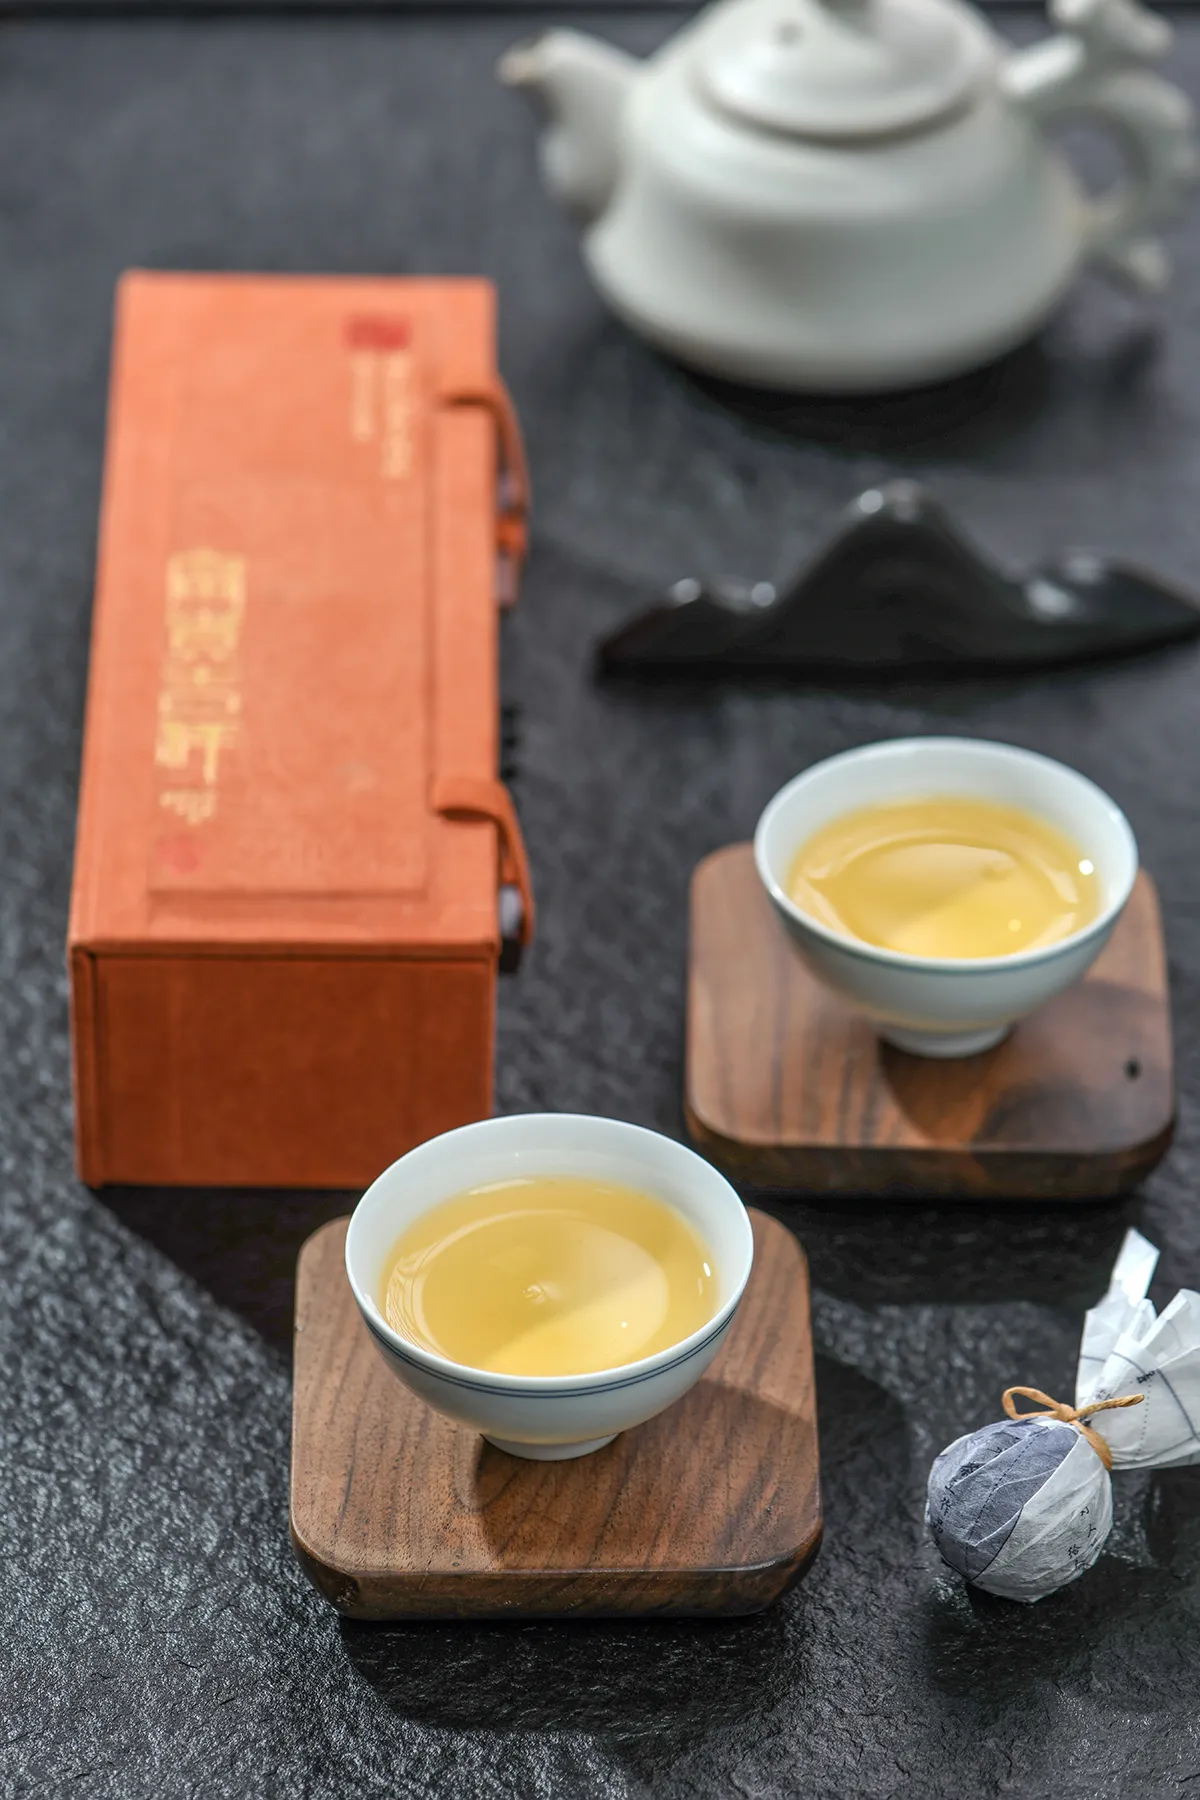 茶叶包装设计—意形社